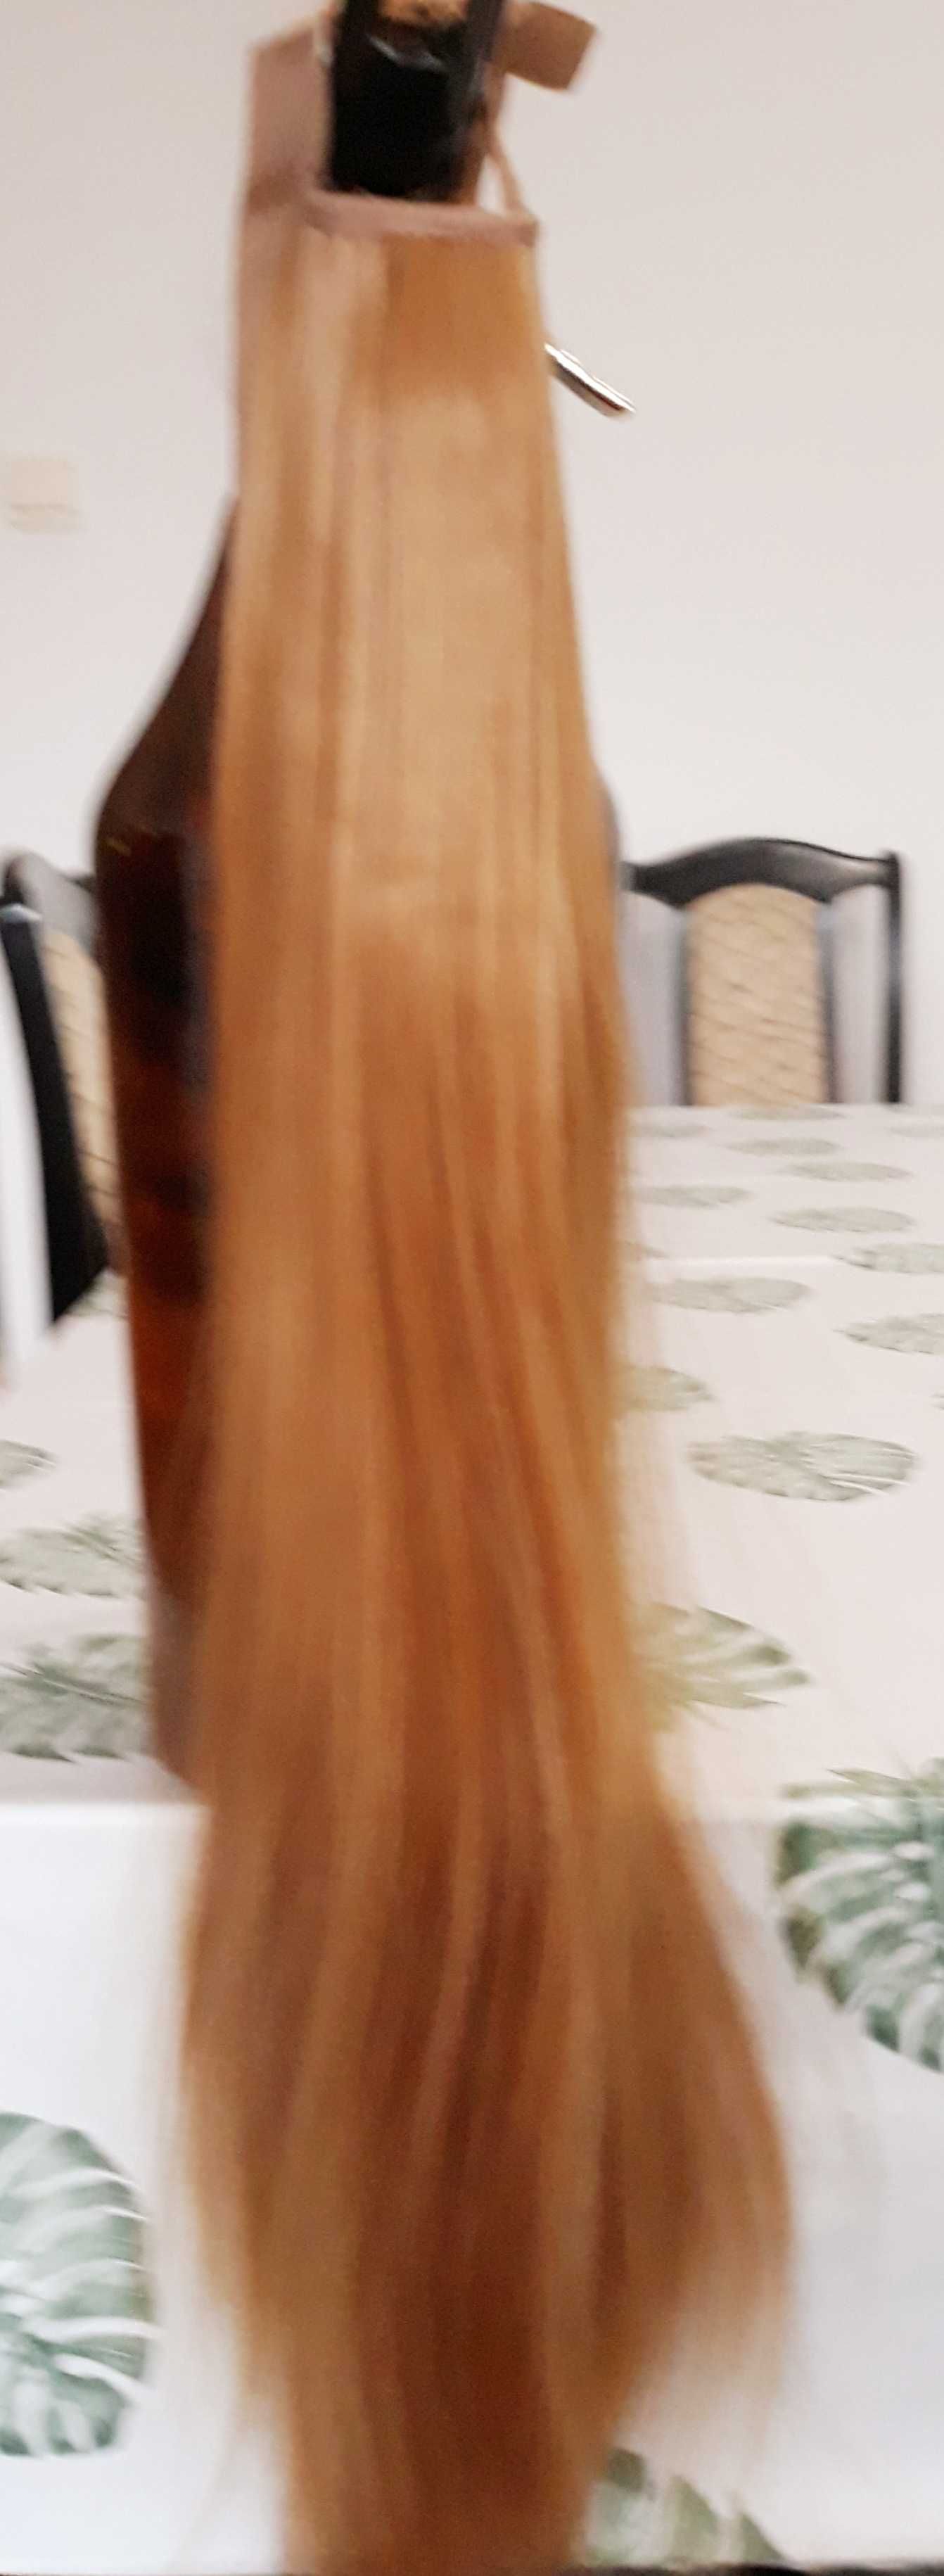 Dopinka z włosów syntetycznych - kucyk